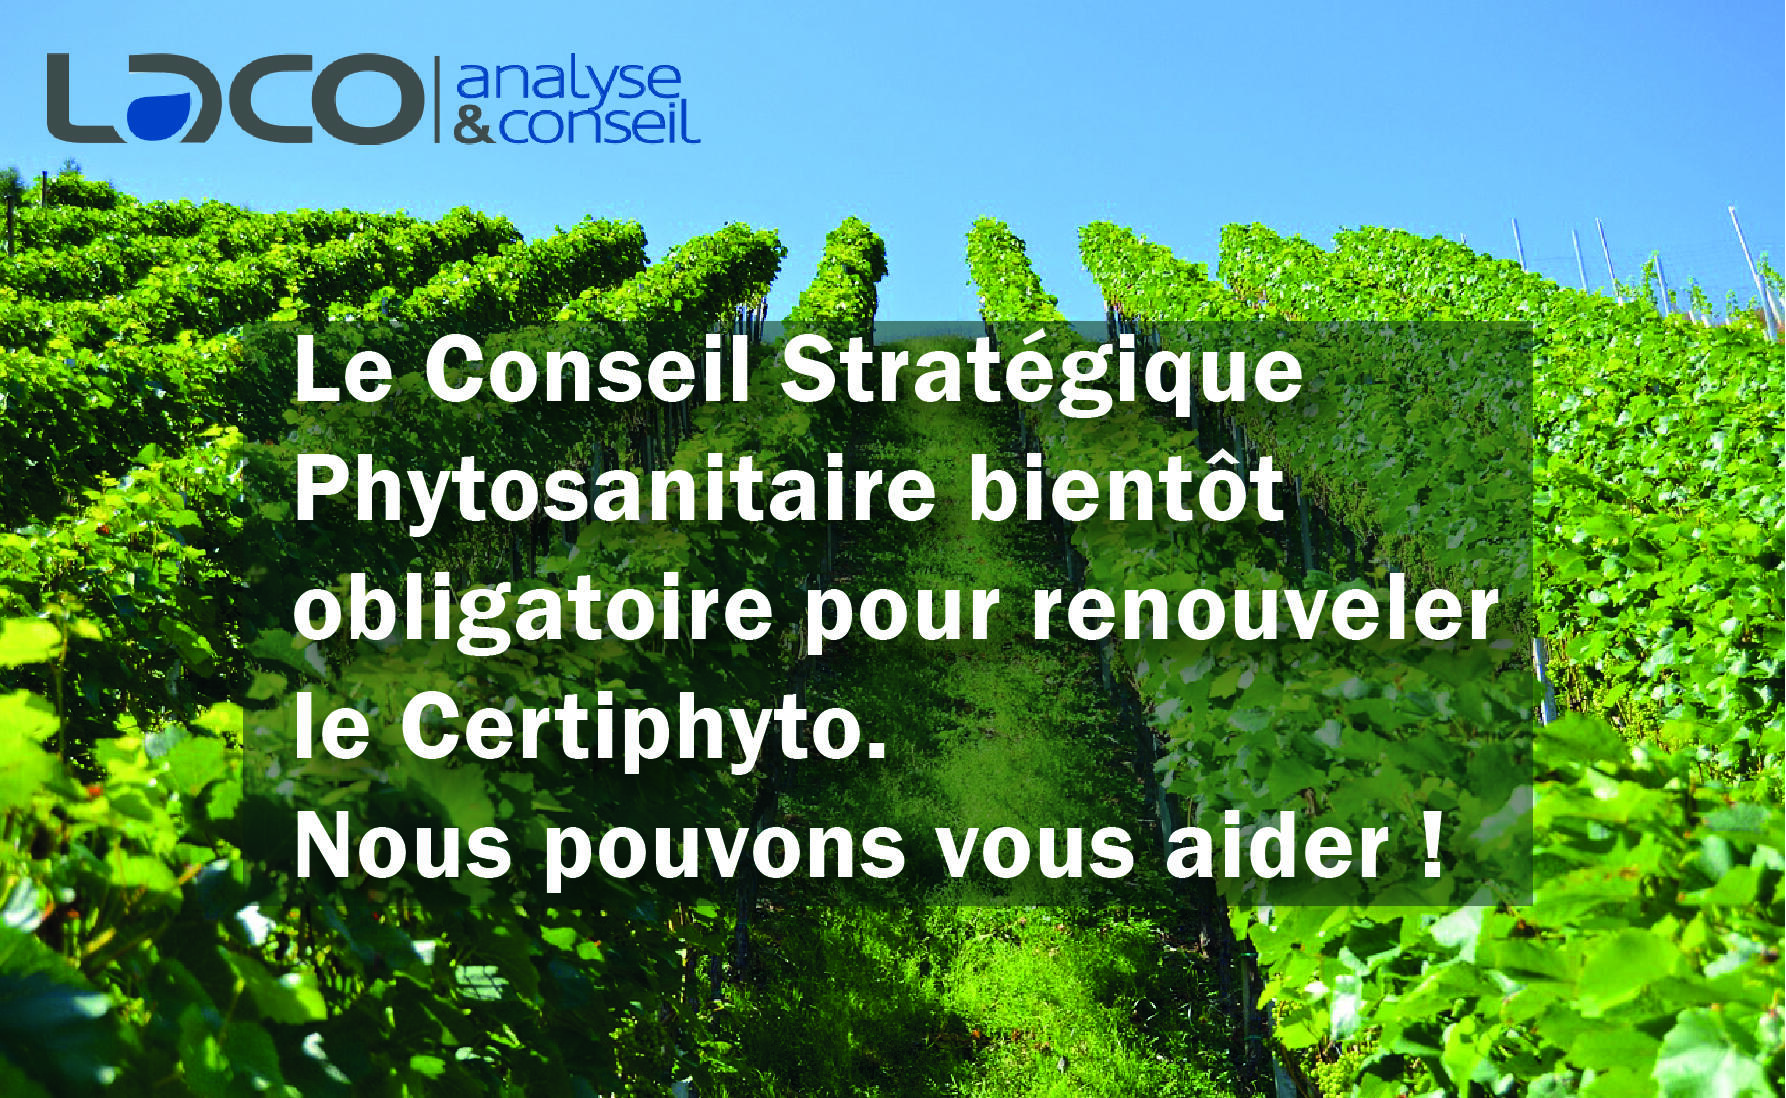 NOUVEAU SERVICE : le Conseil Phytosanitaire Stratégique